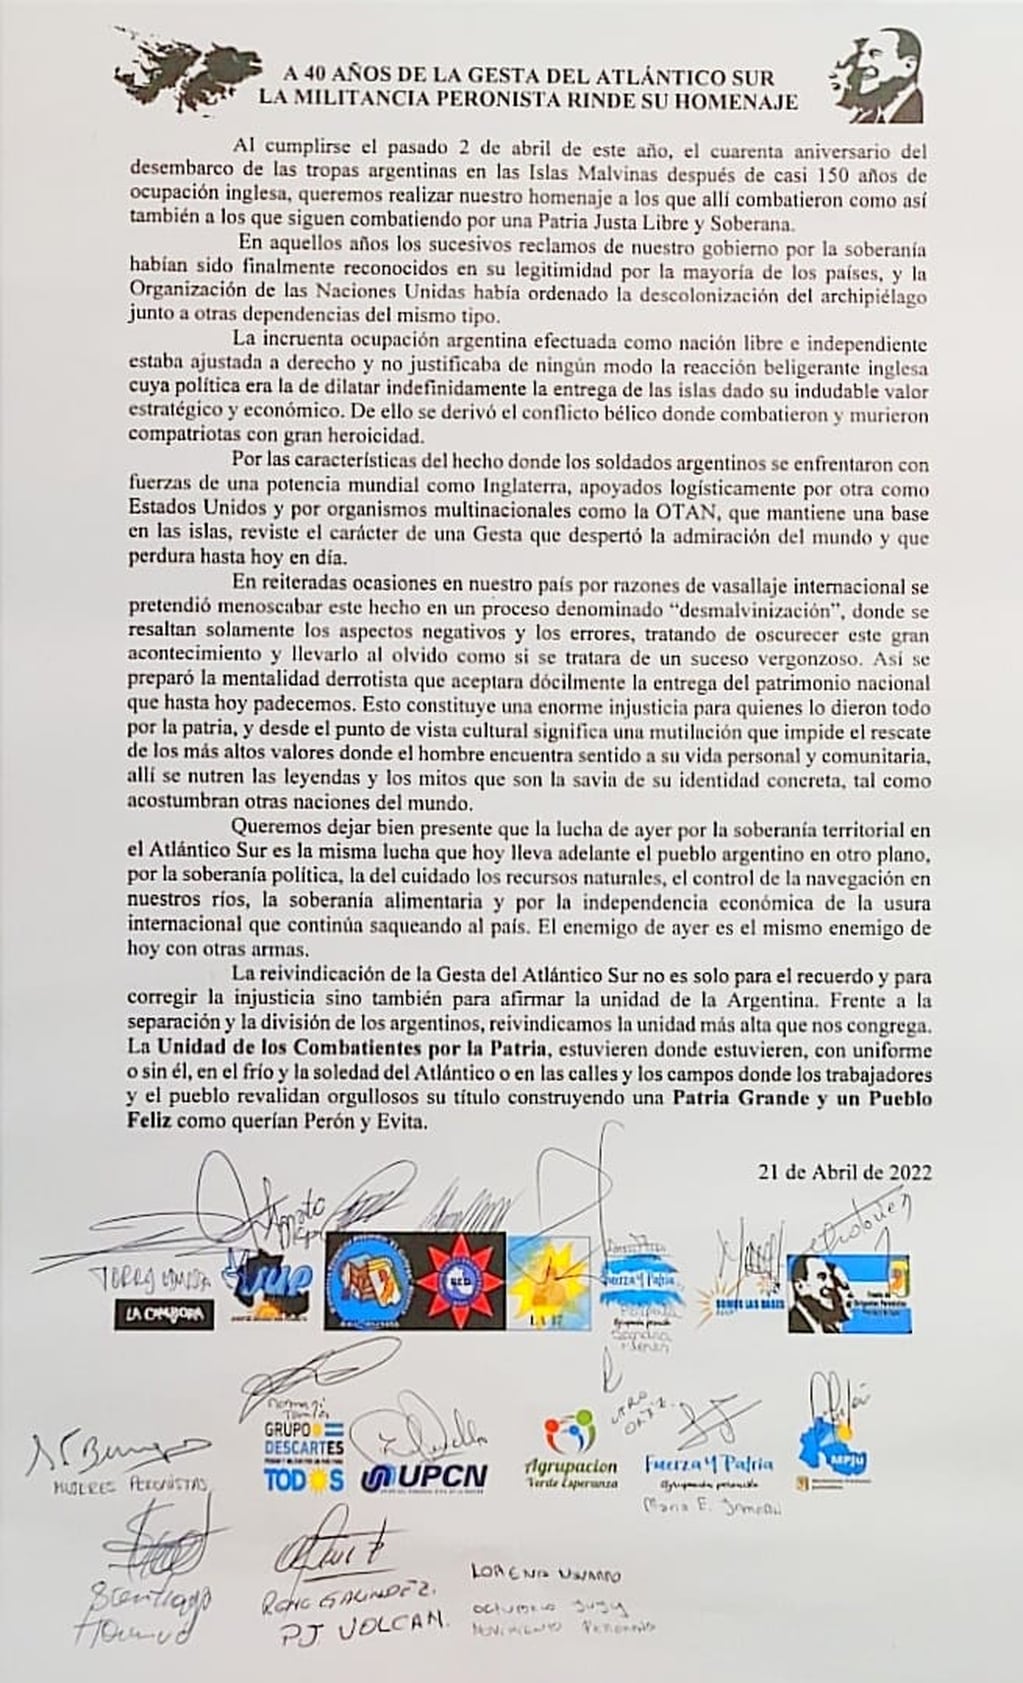 El manifiesto firmado por referentes de agrupaciones, sindicatos y organizaciones peronistas que les fue entregado en el homenaje a los veteranos de Malvinas de Jujuy.